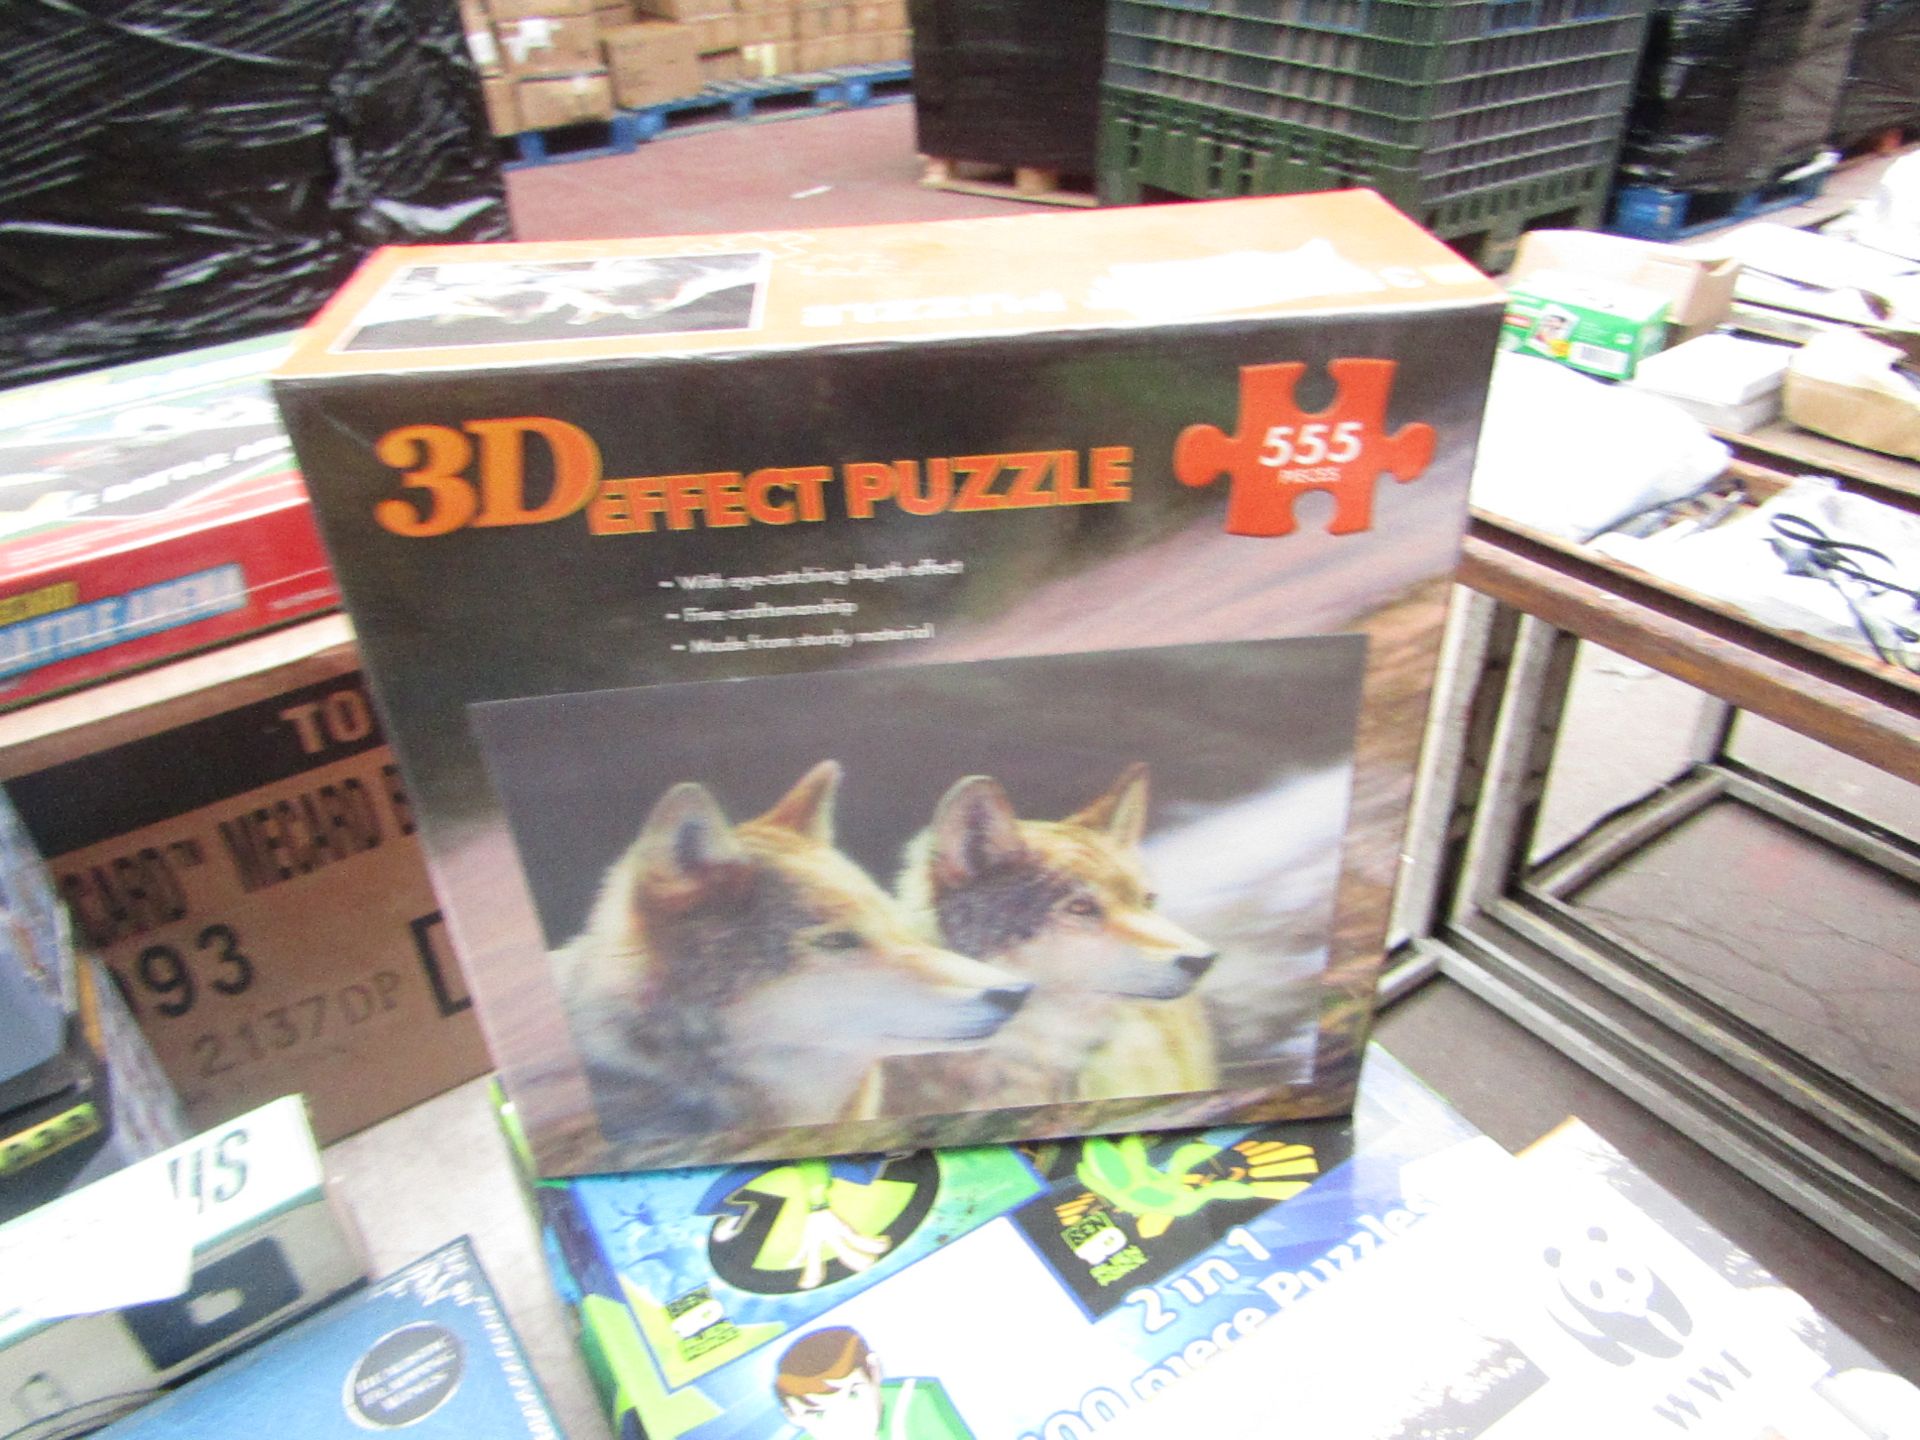 3D Effect Puzzle - 555 Pieces - Wolves -